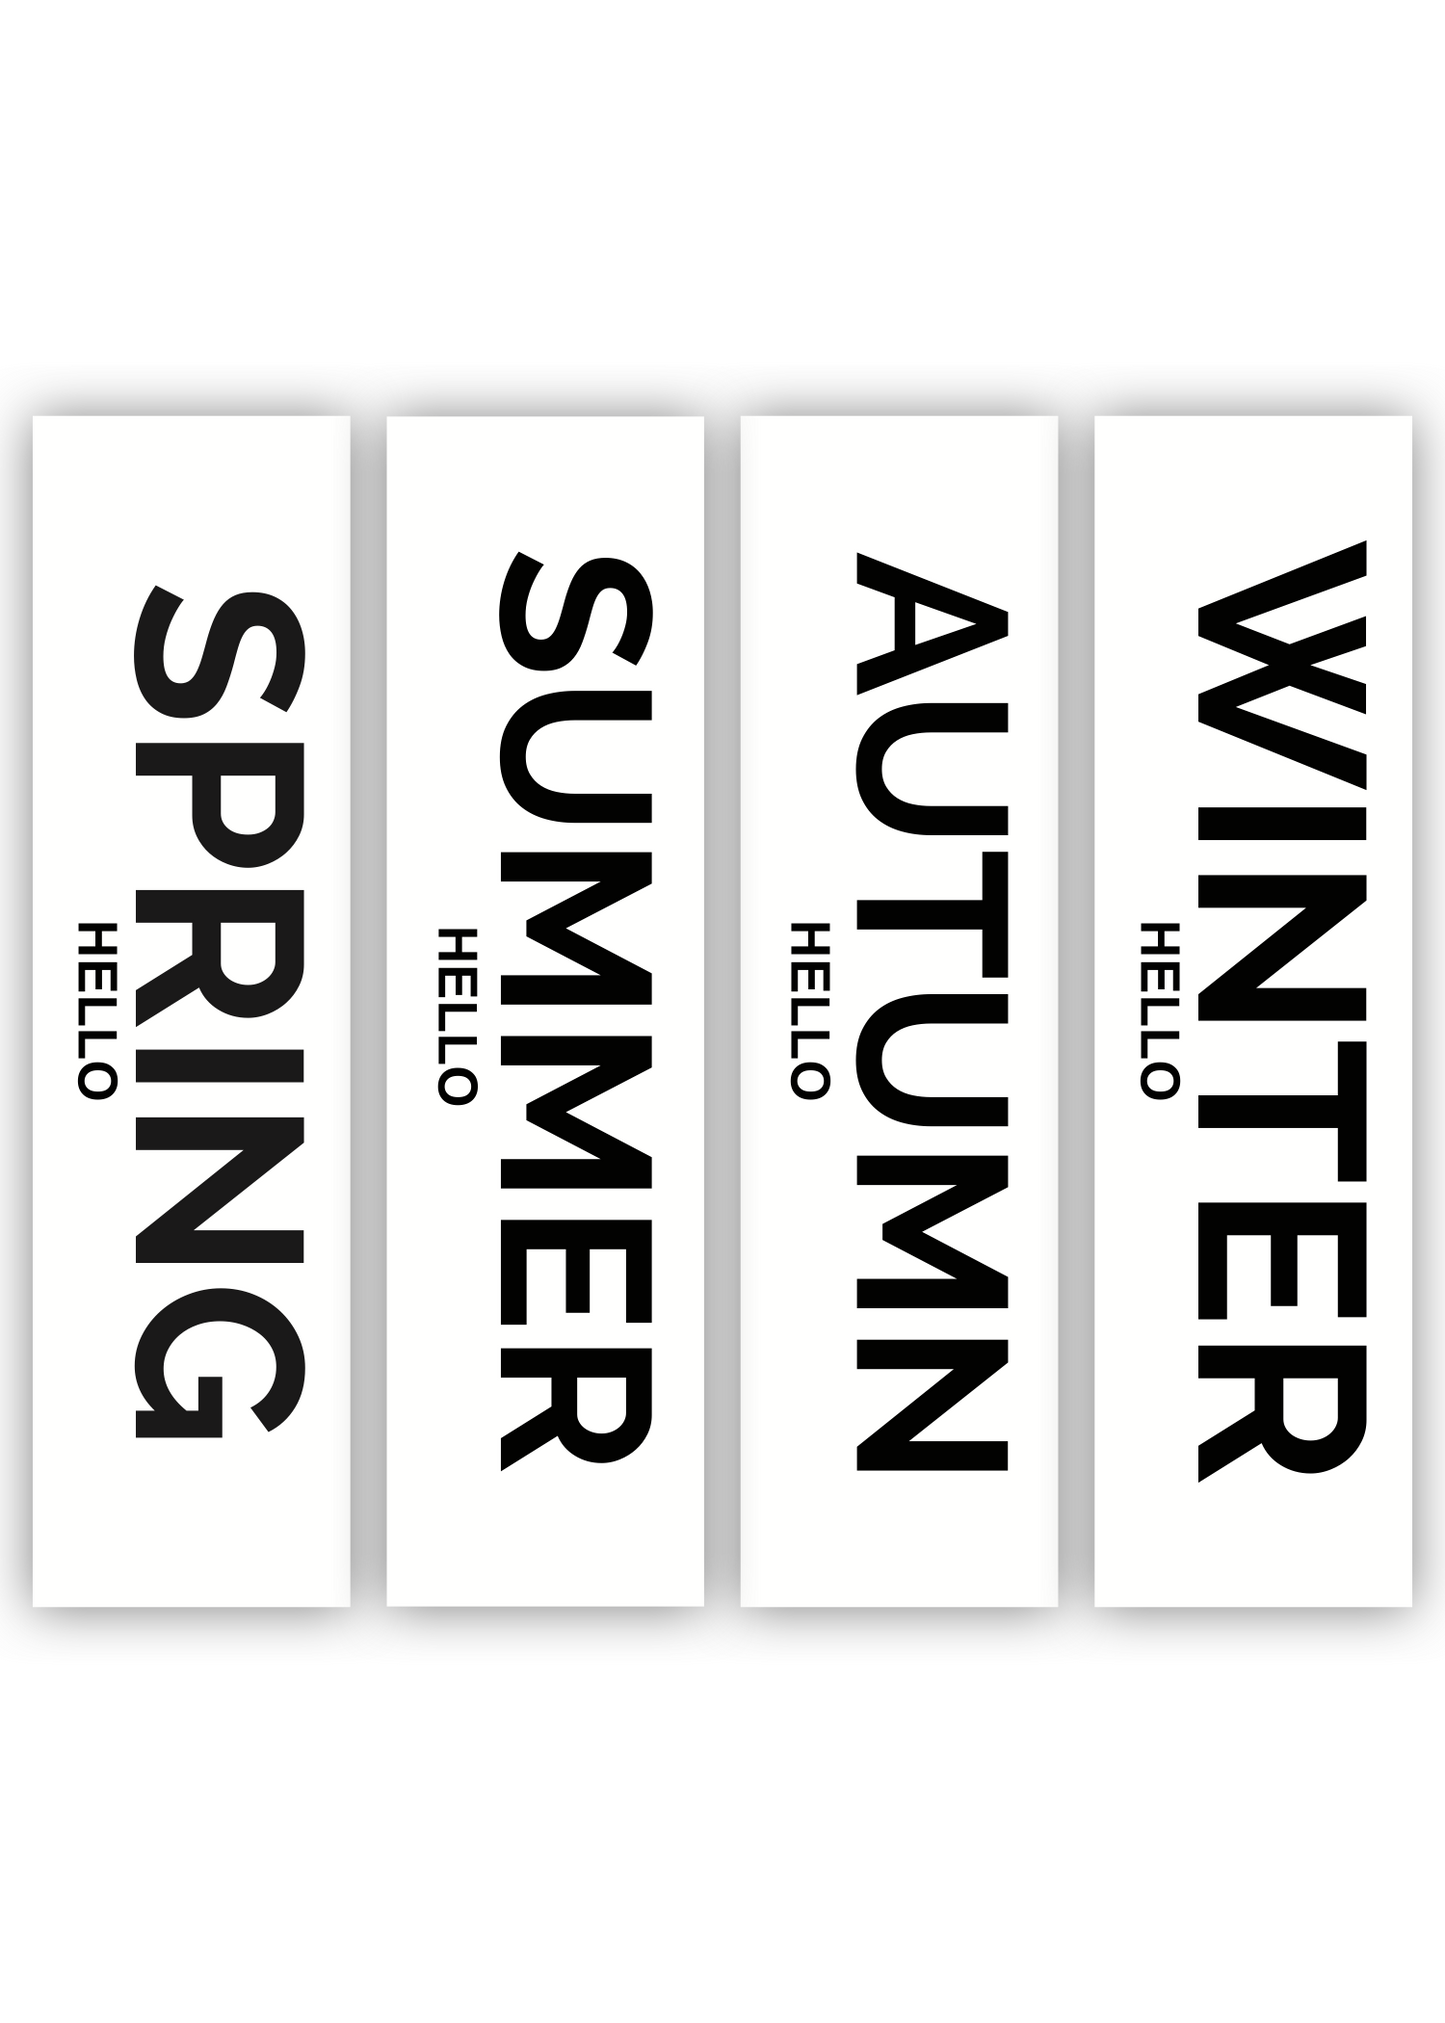 huisje van sanne langwerpige poster 4 seizoenen pakket zwart wit met tekst hello spring, summer, autumn en winter. 